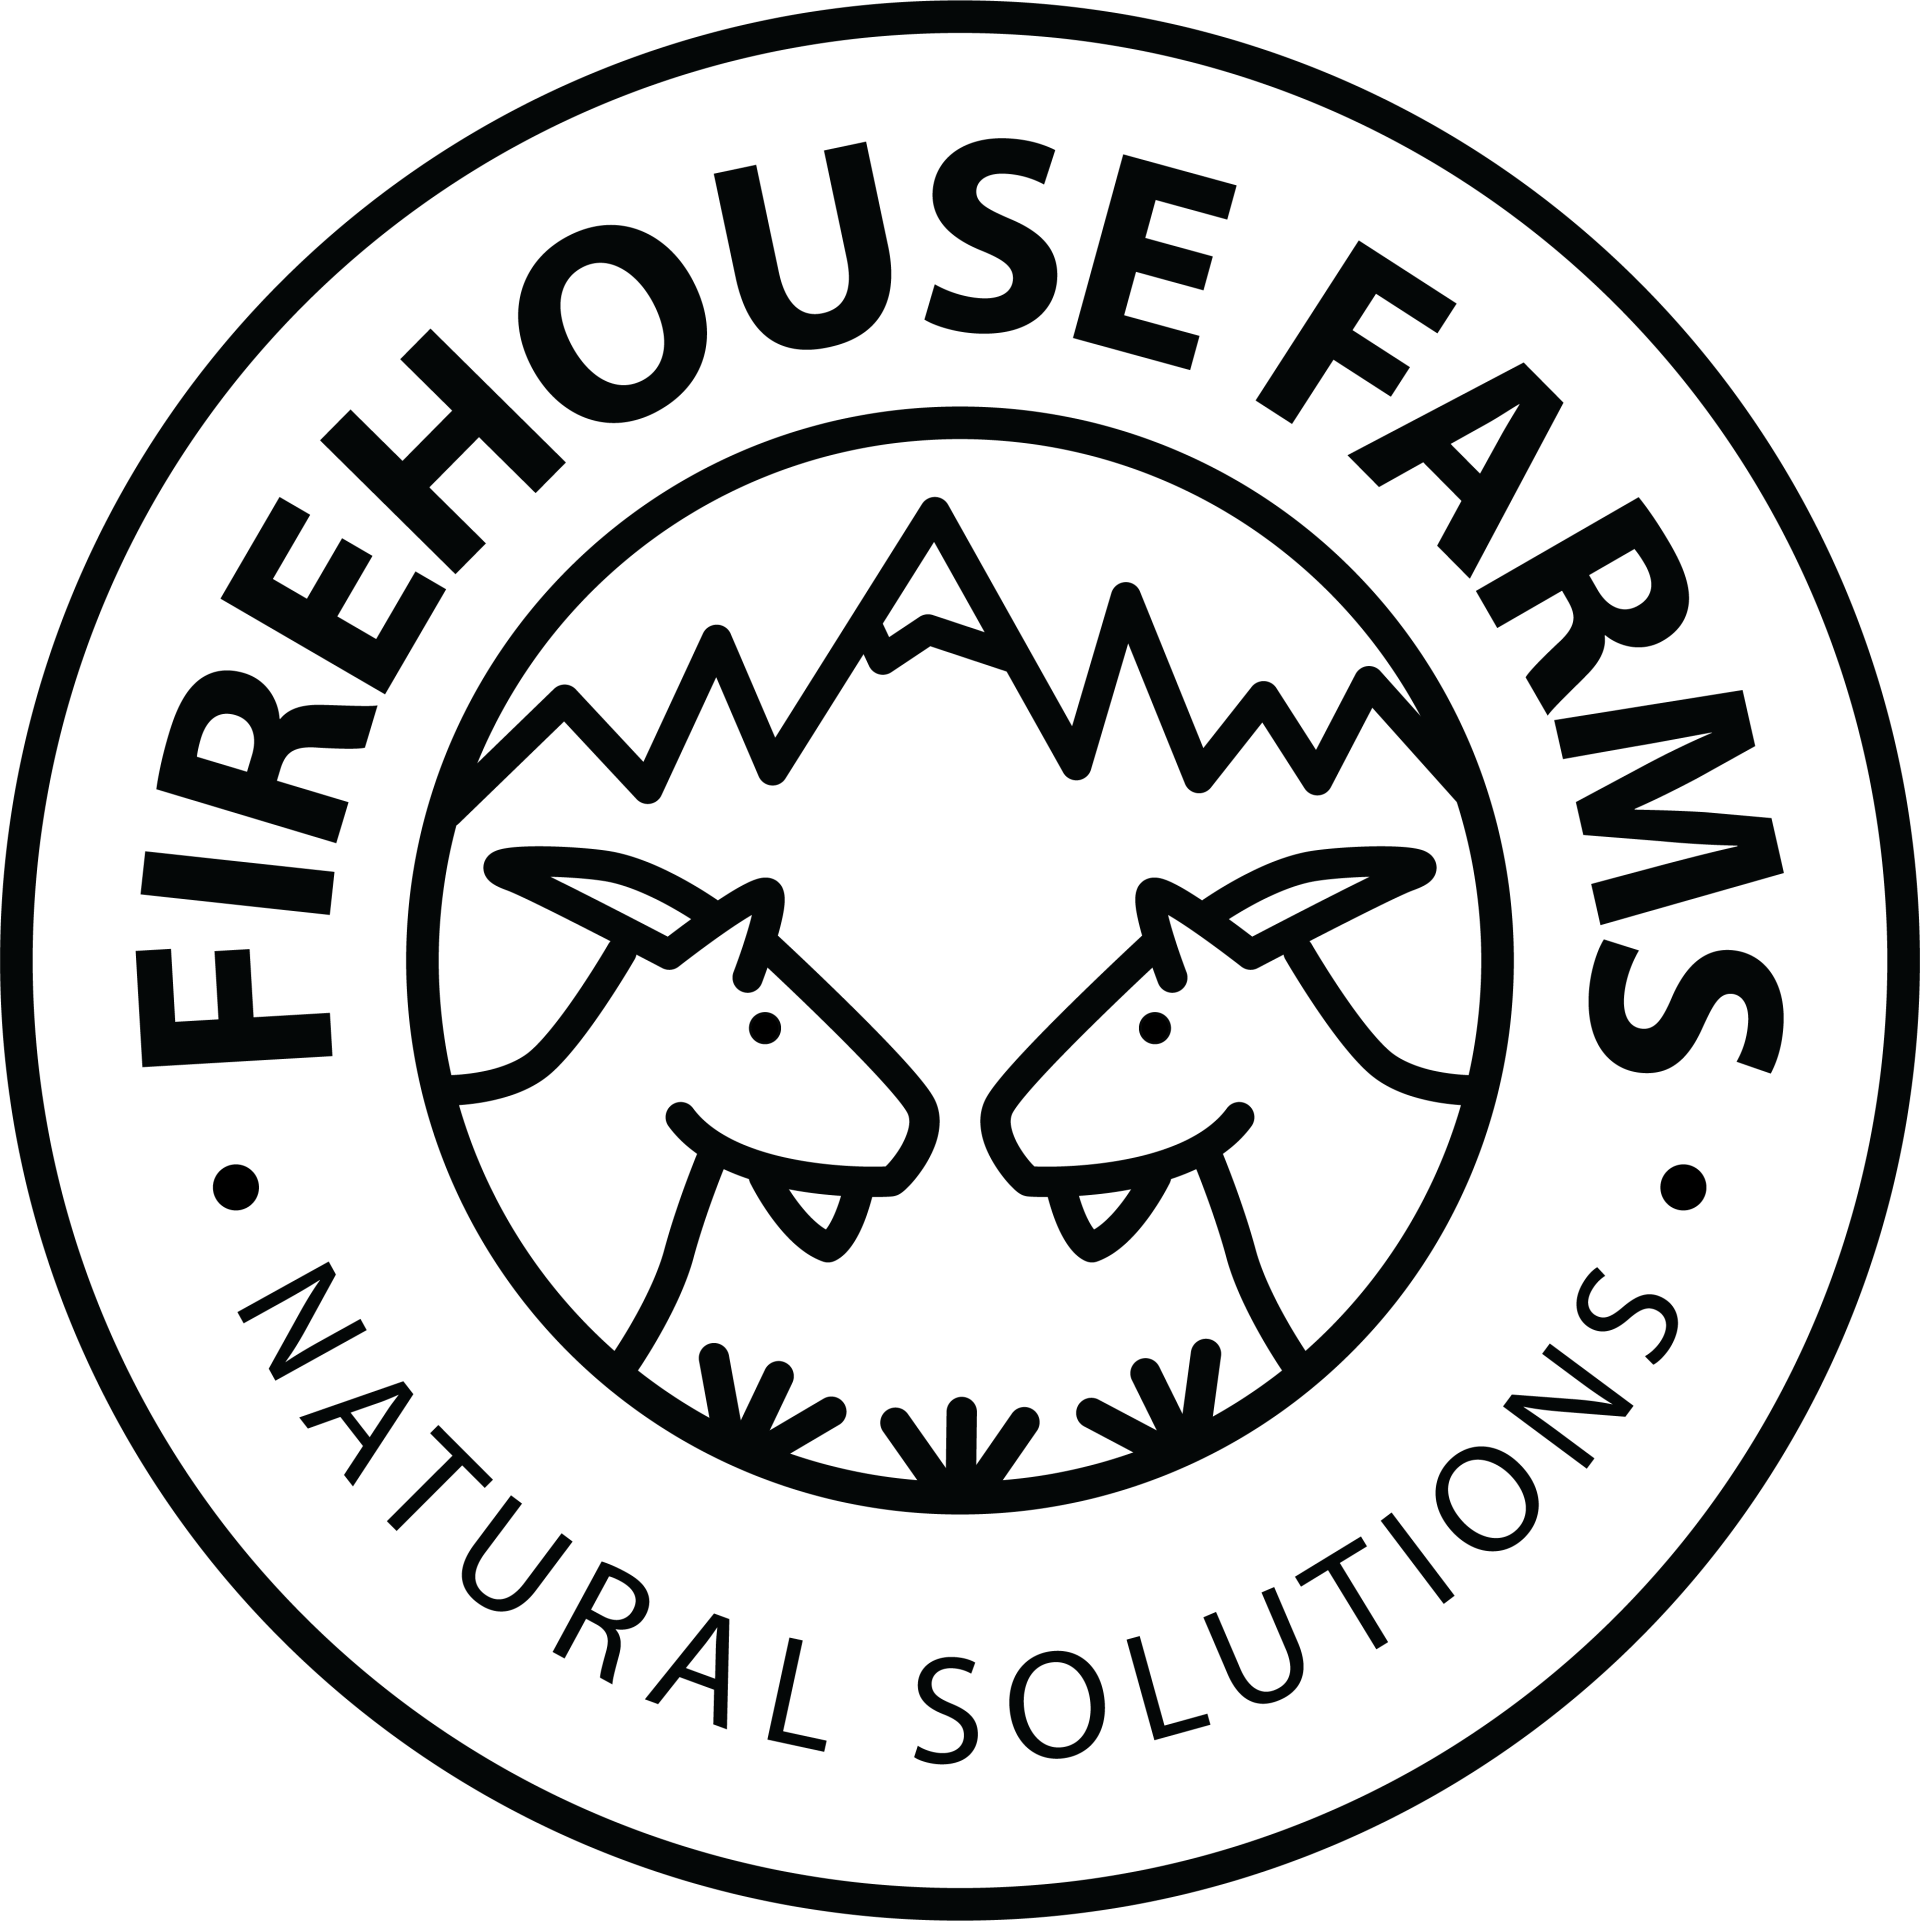 Firehouse Farms Logo